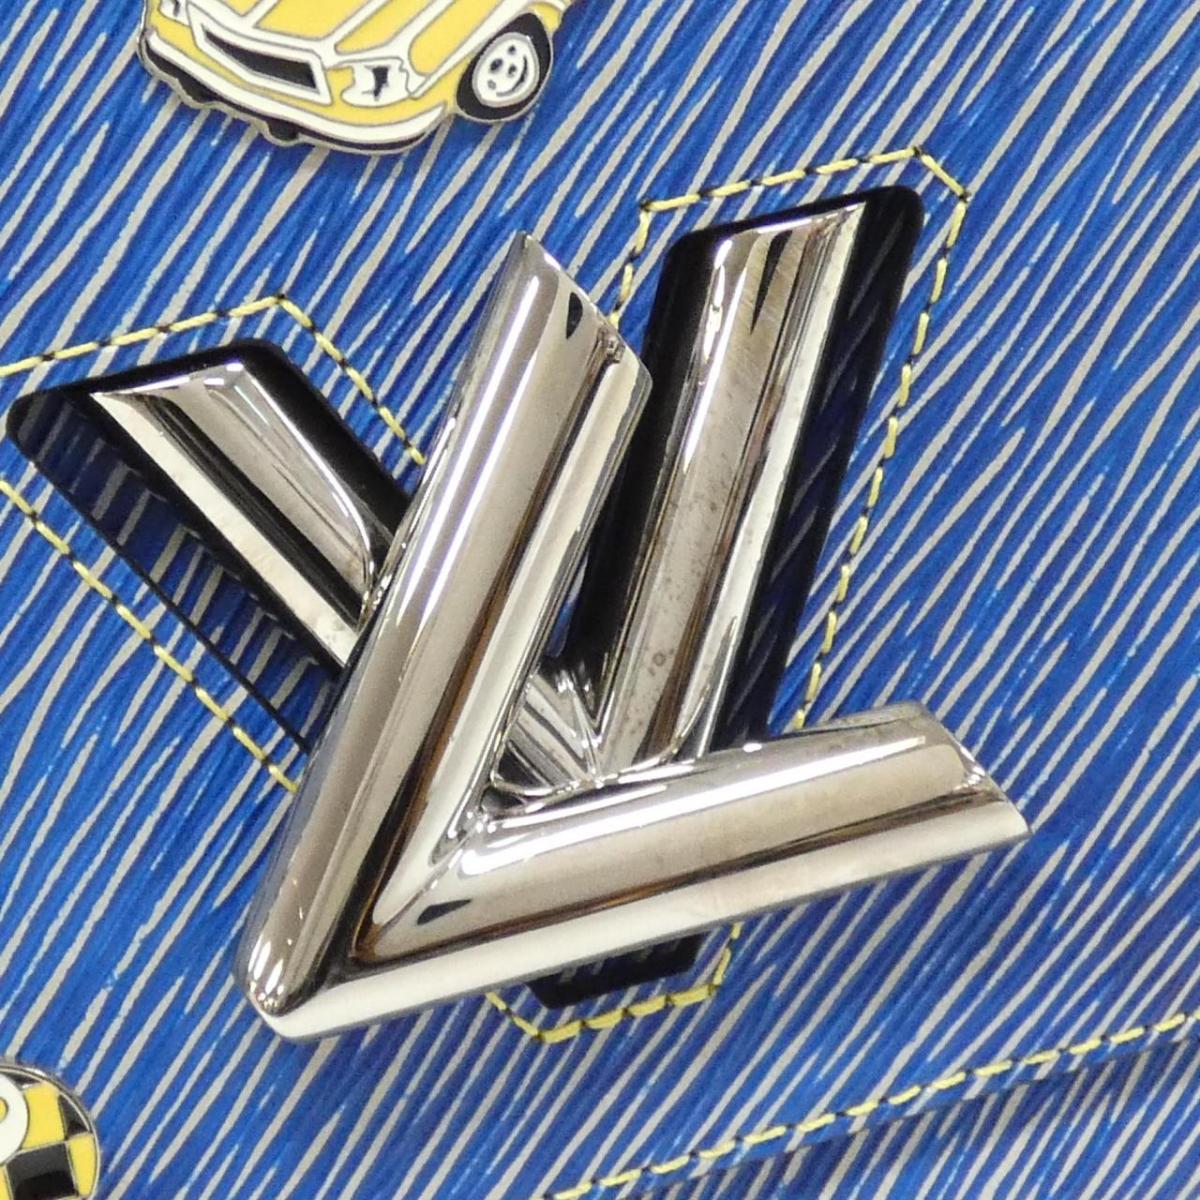 Louis Vuitton Epi Denim Twist M54865 Shoulder Bag